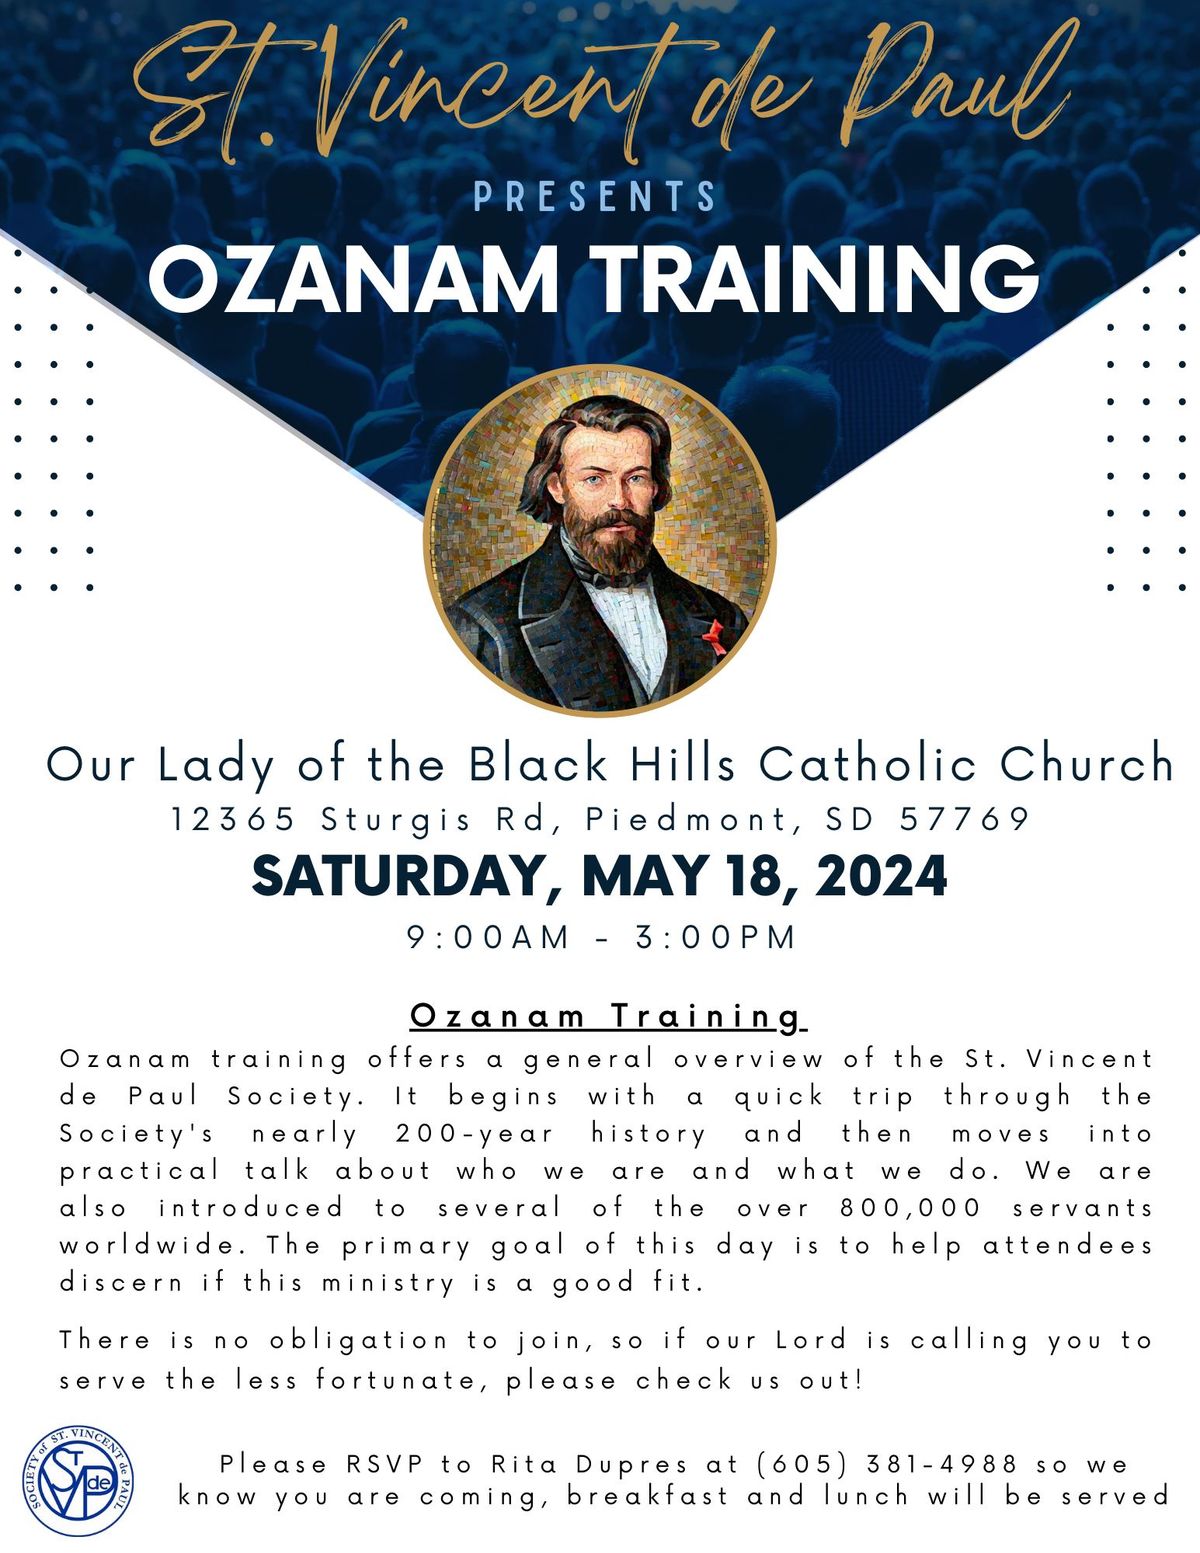 St. Vincent de Paul presents OZANAM TRAINING